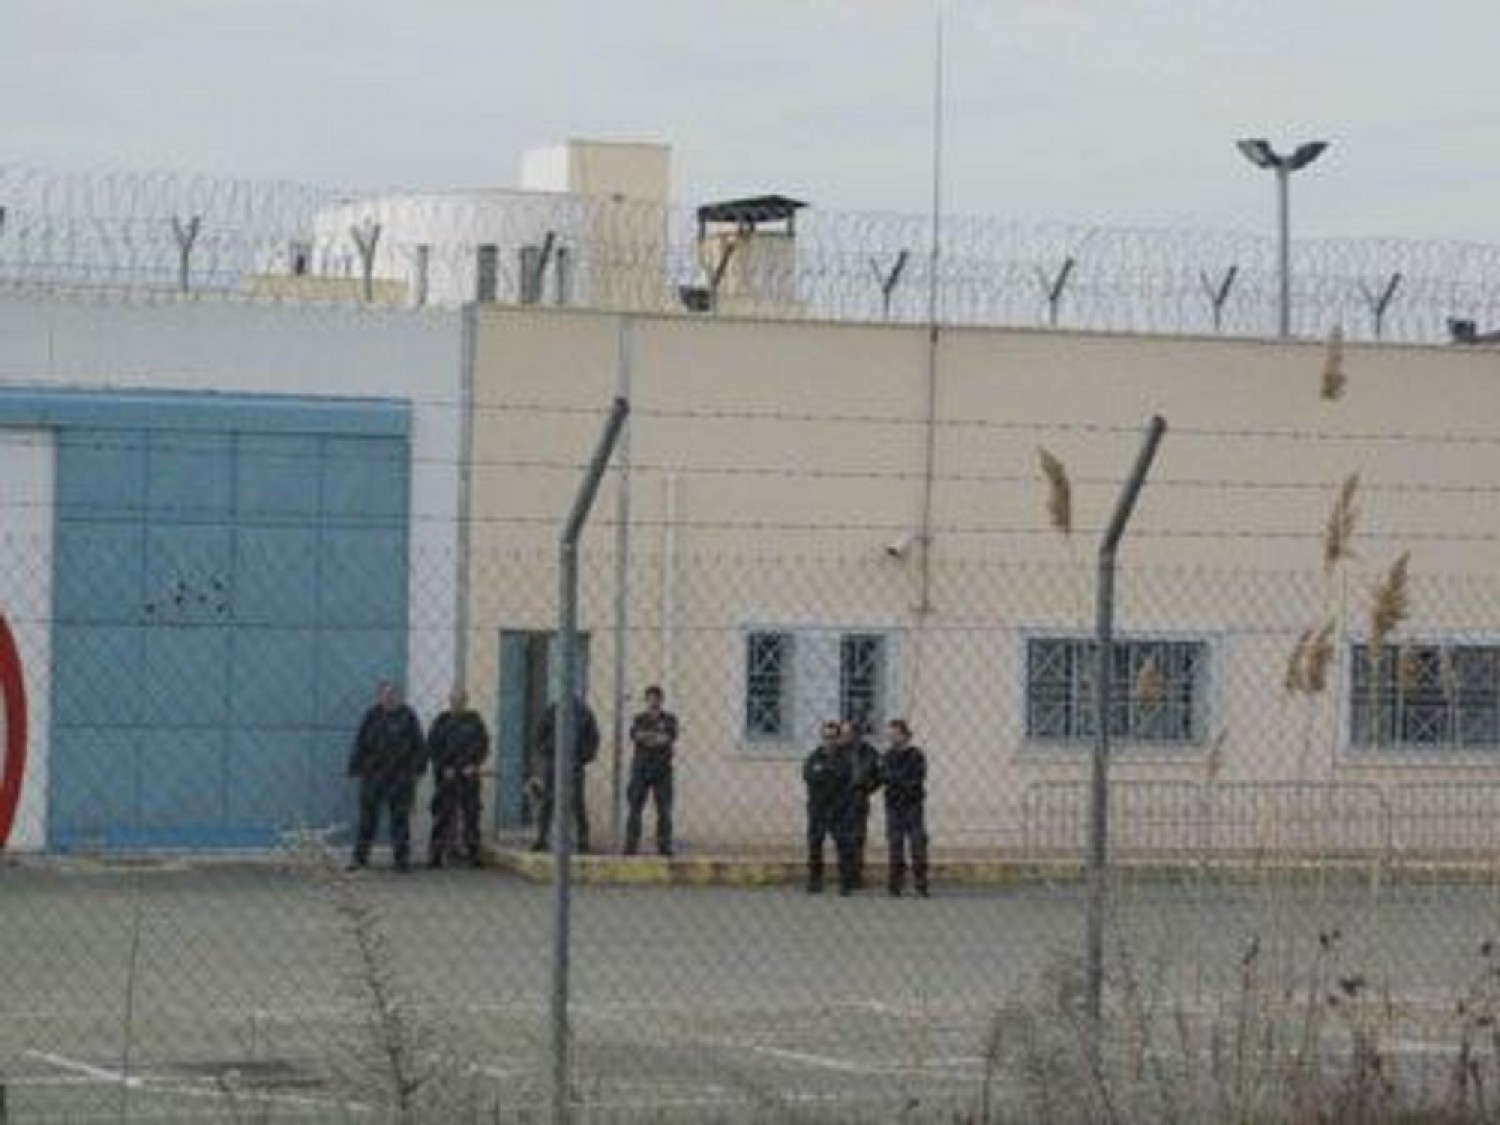 Προφυλακιστέοι στις φυλακές Γρεβενών οι δύο αστυνομικοί που συνελήφθησαν για διευκόλυνση διακίνησης μεταναστών